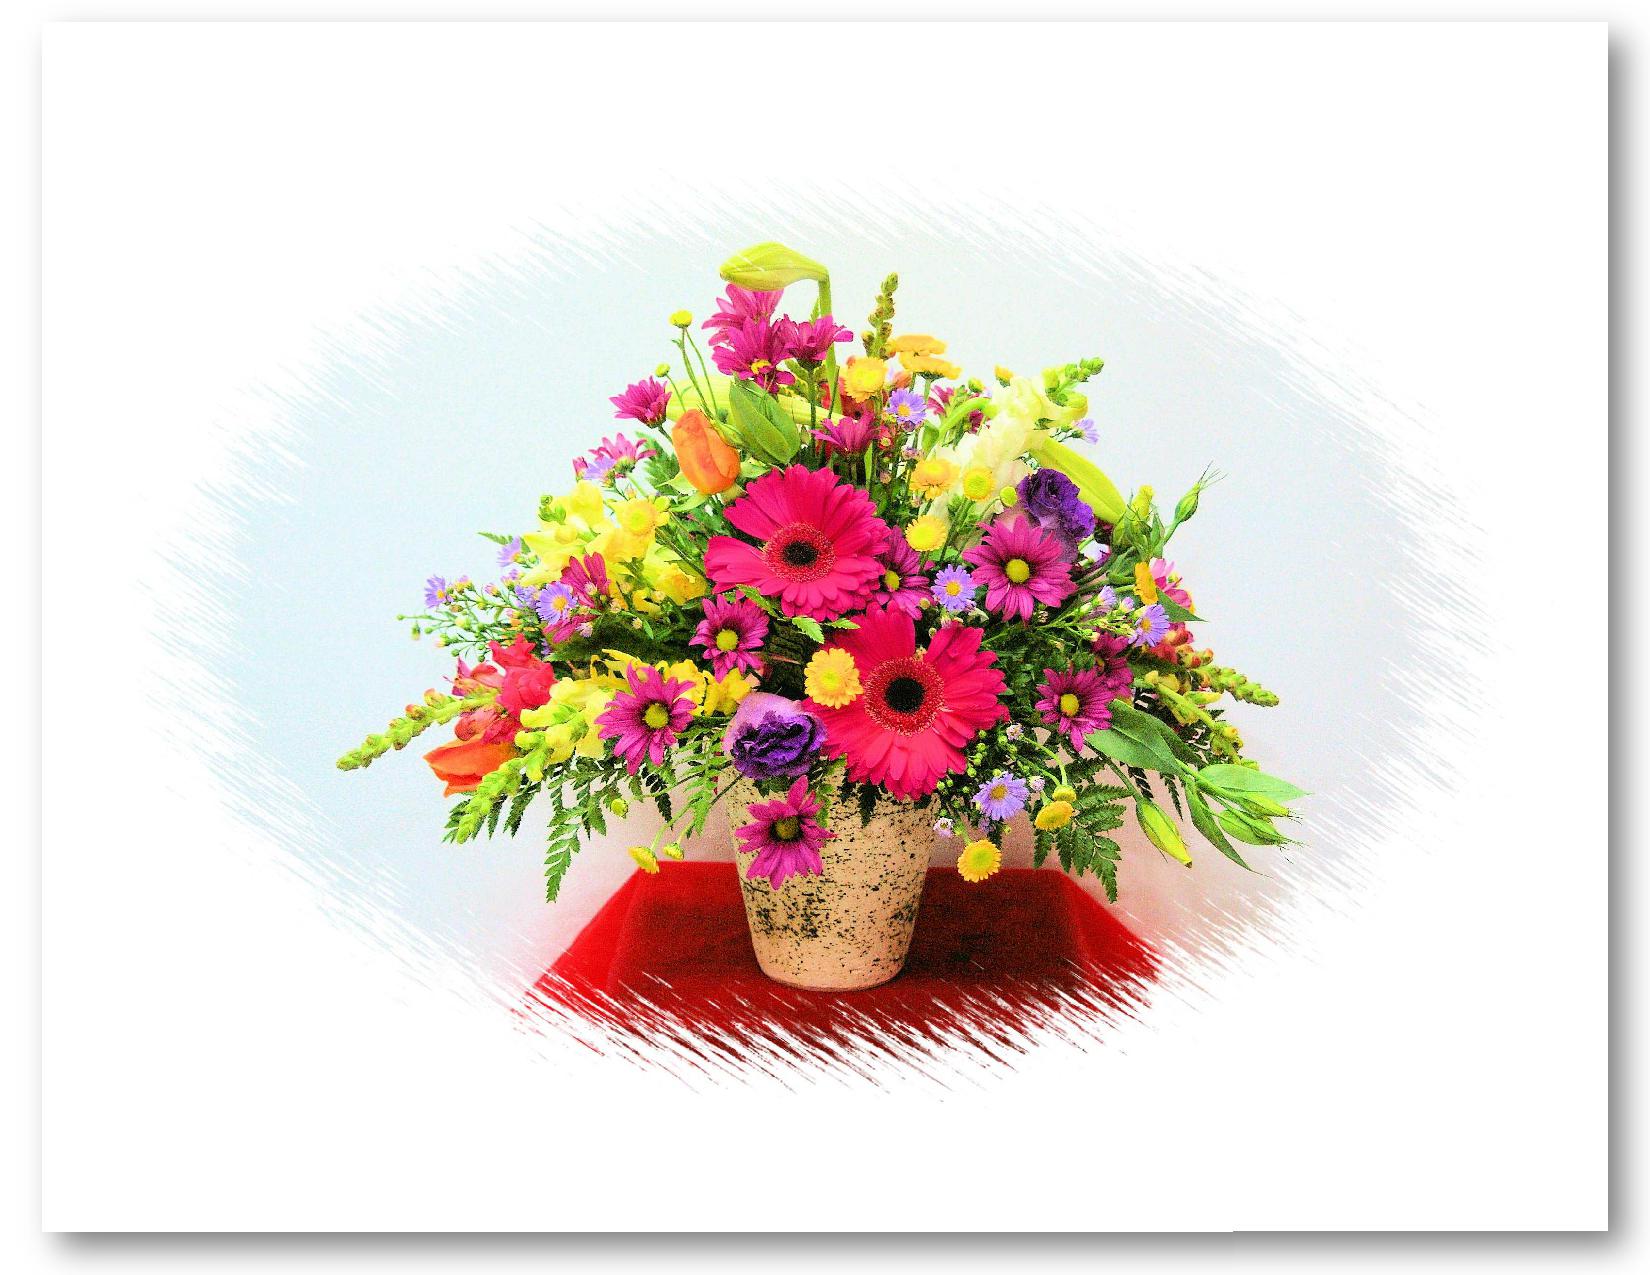 Pots Of Flowers - Flowers In Pots - HD Wallpaper 